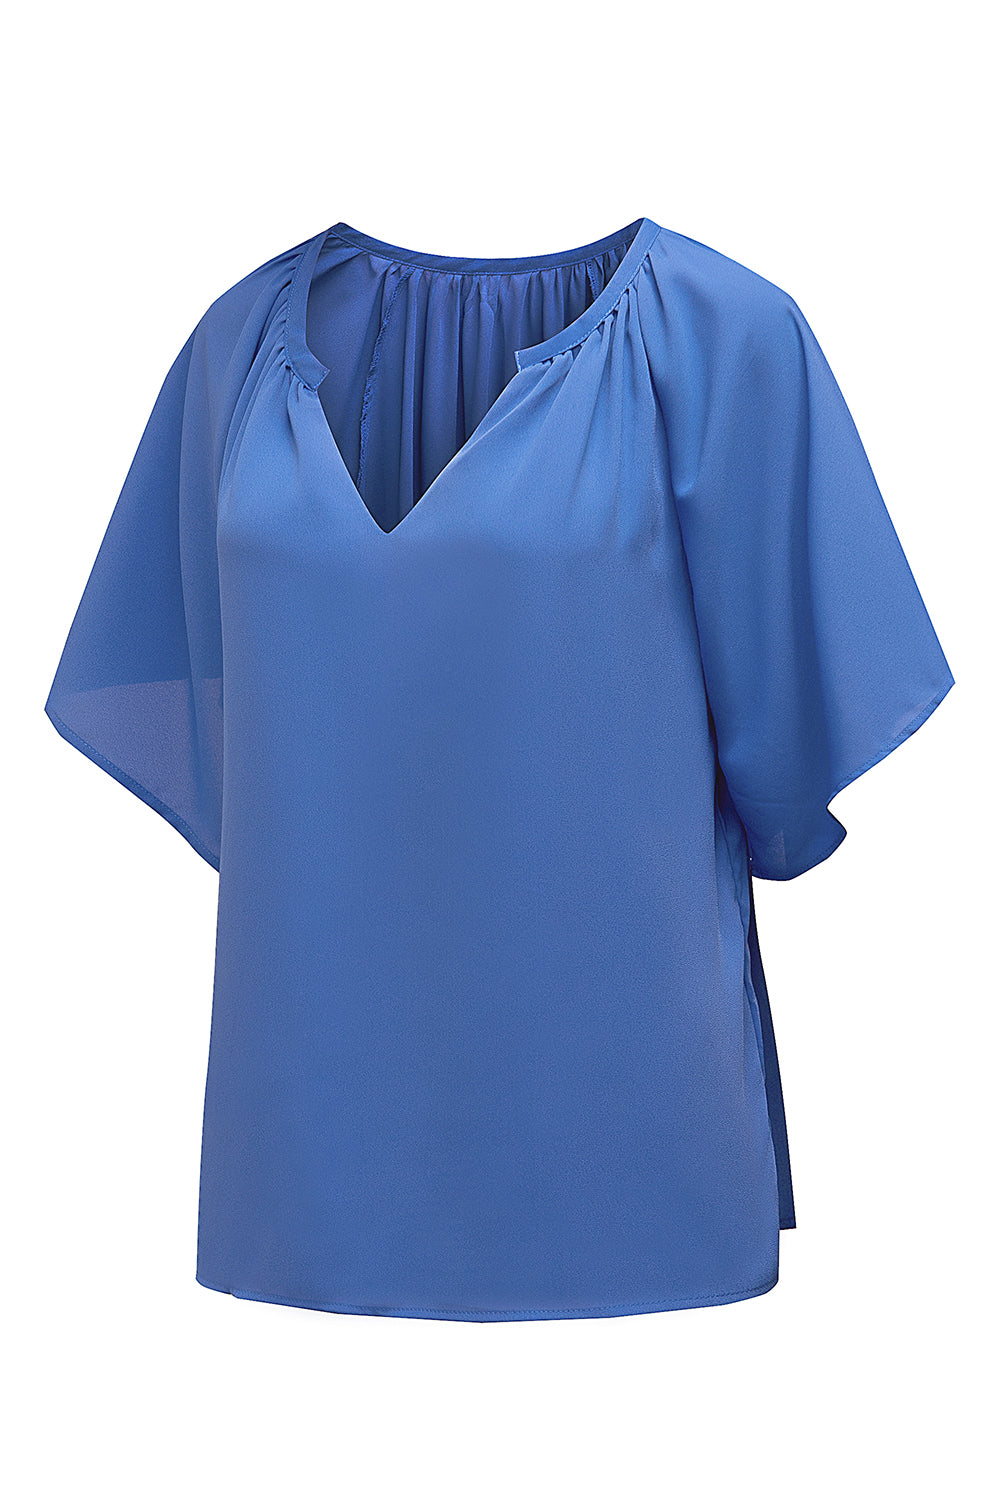 Modra ohlapna nagubana bluza z razcepljenim ovratnikom